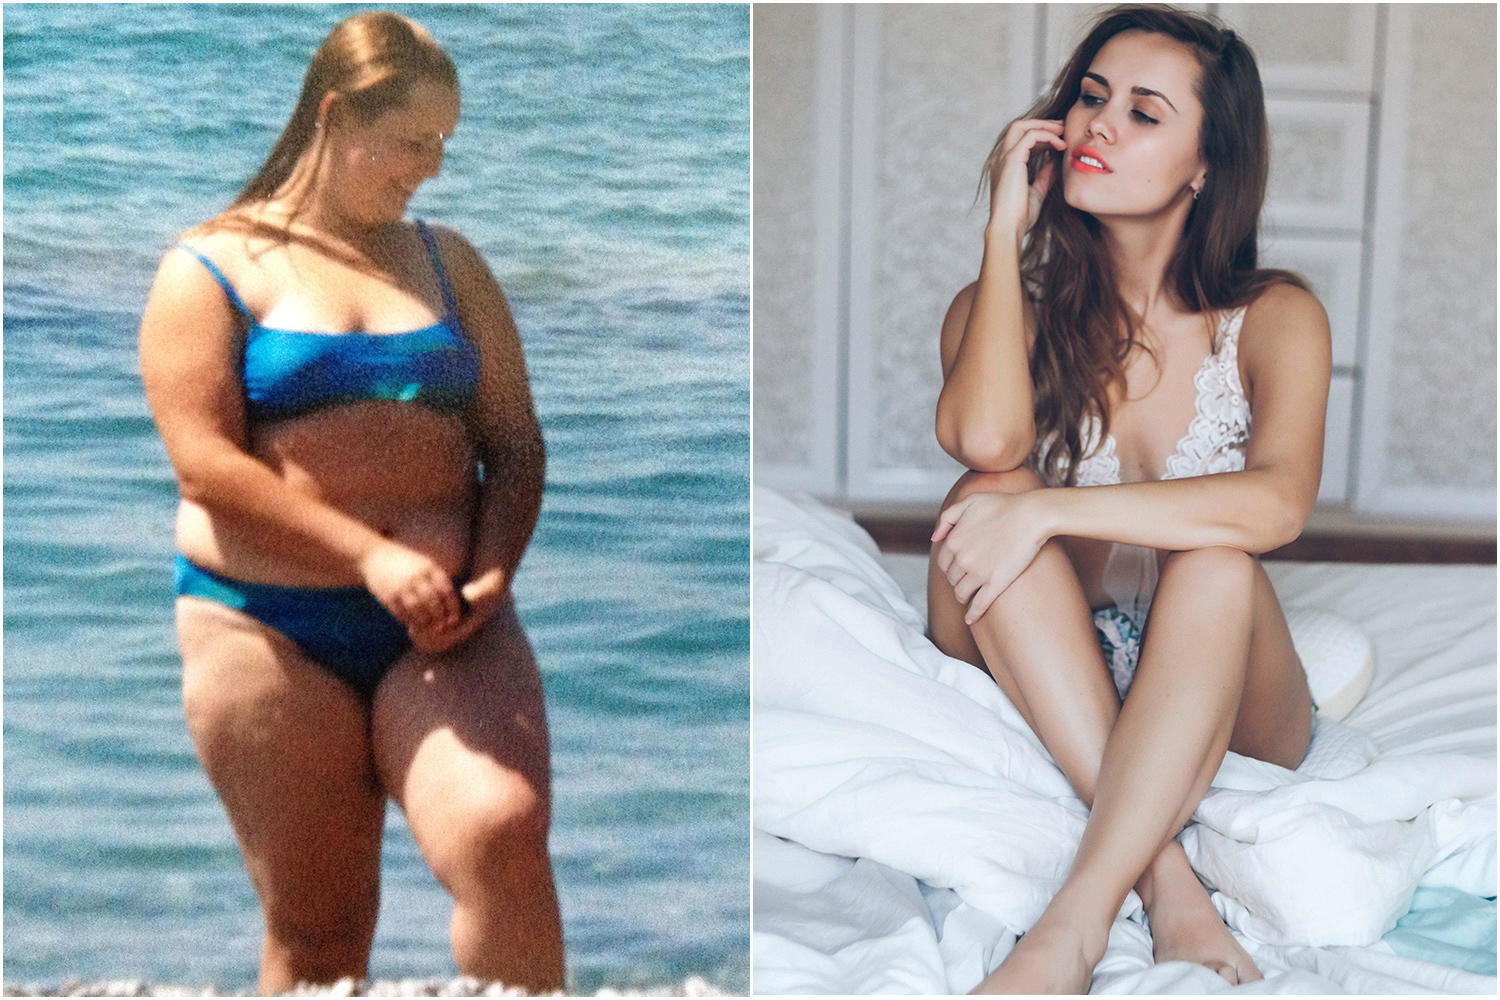 Μια ζωή την κορόιδευαν για τα κιλά της. Όταν όμως έκλεισε τα 22 ανέβασε αυτές τις φωτογραφίες στο Instagram και αποστόμωσε τους επικριτές της!